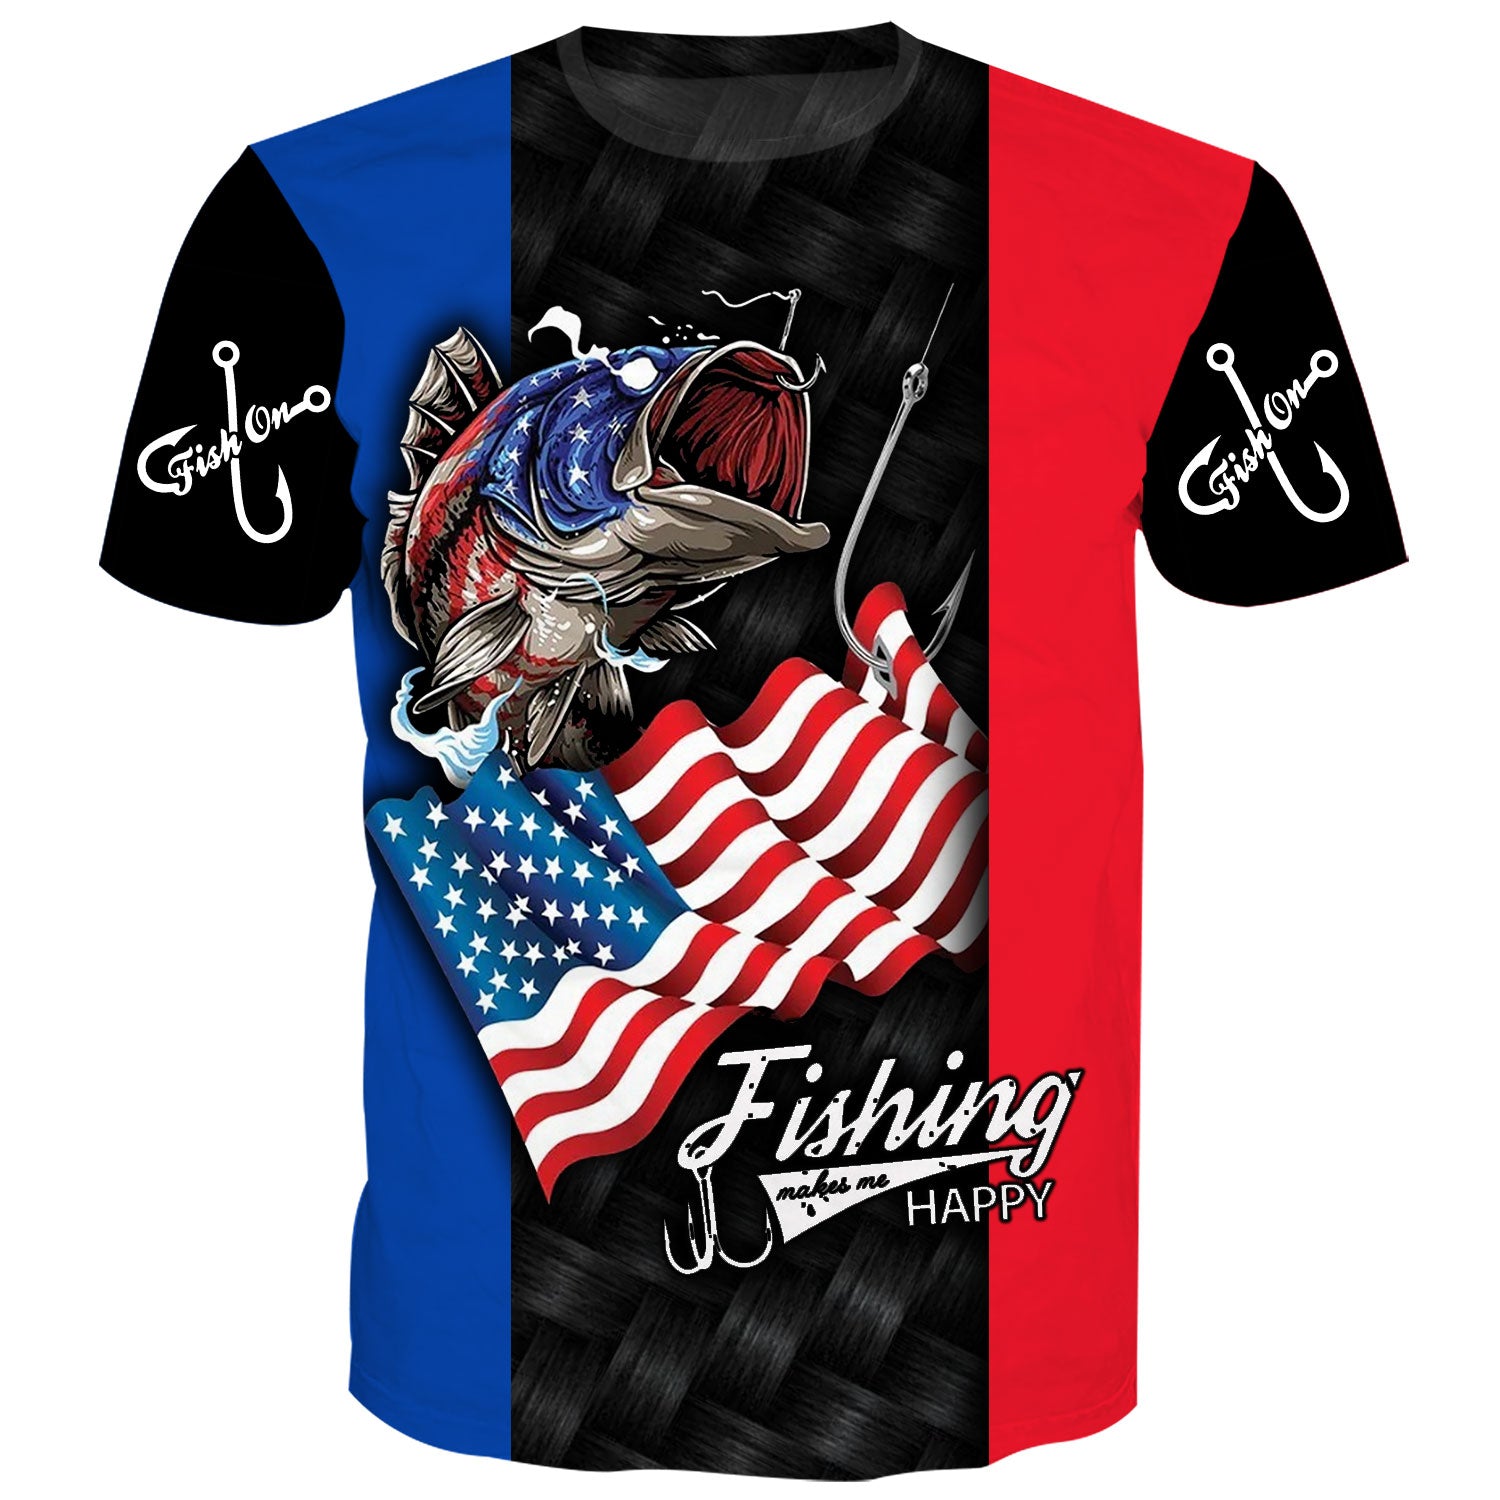 Fishing makes me Happy - USA Flag T-Shirt